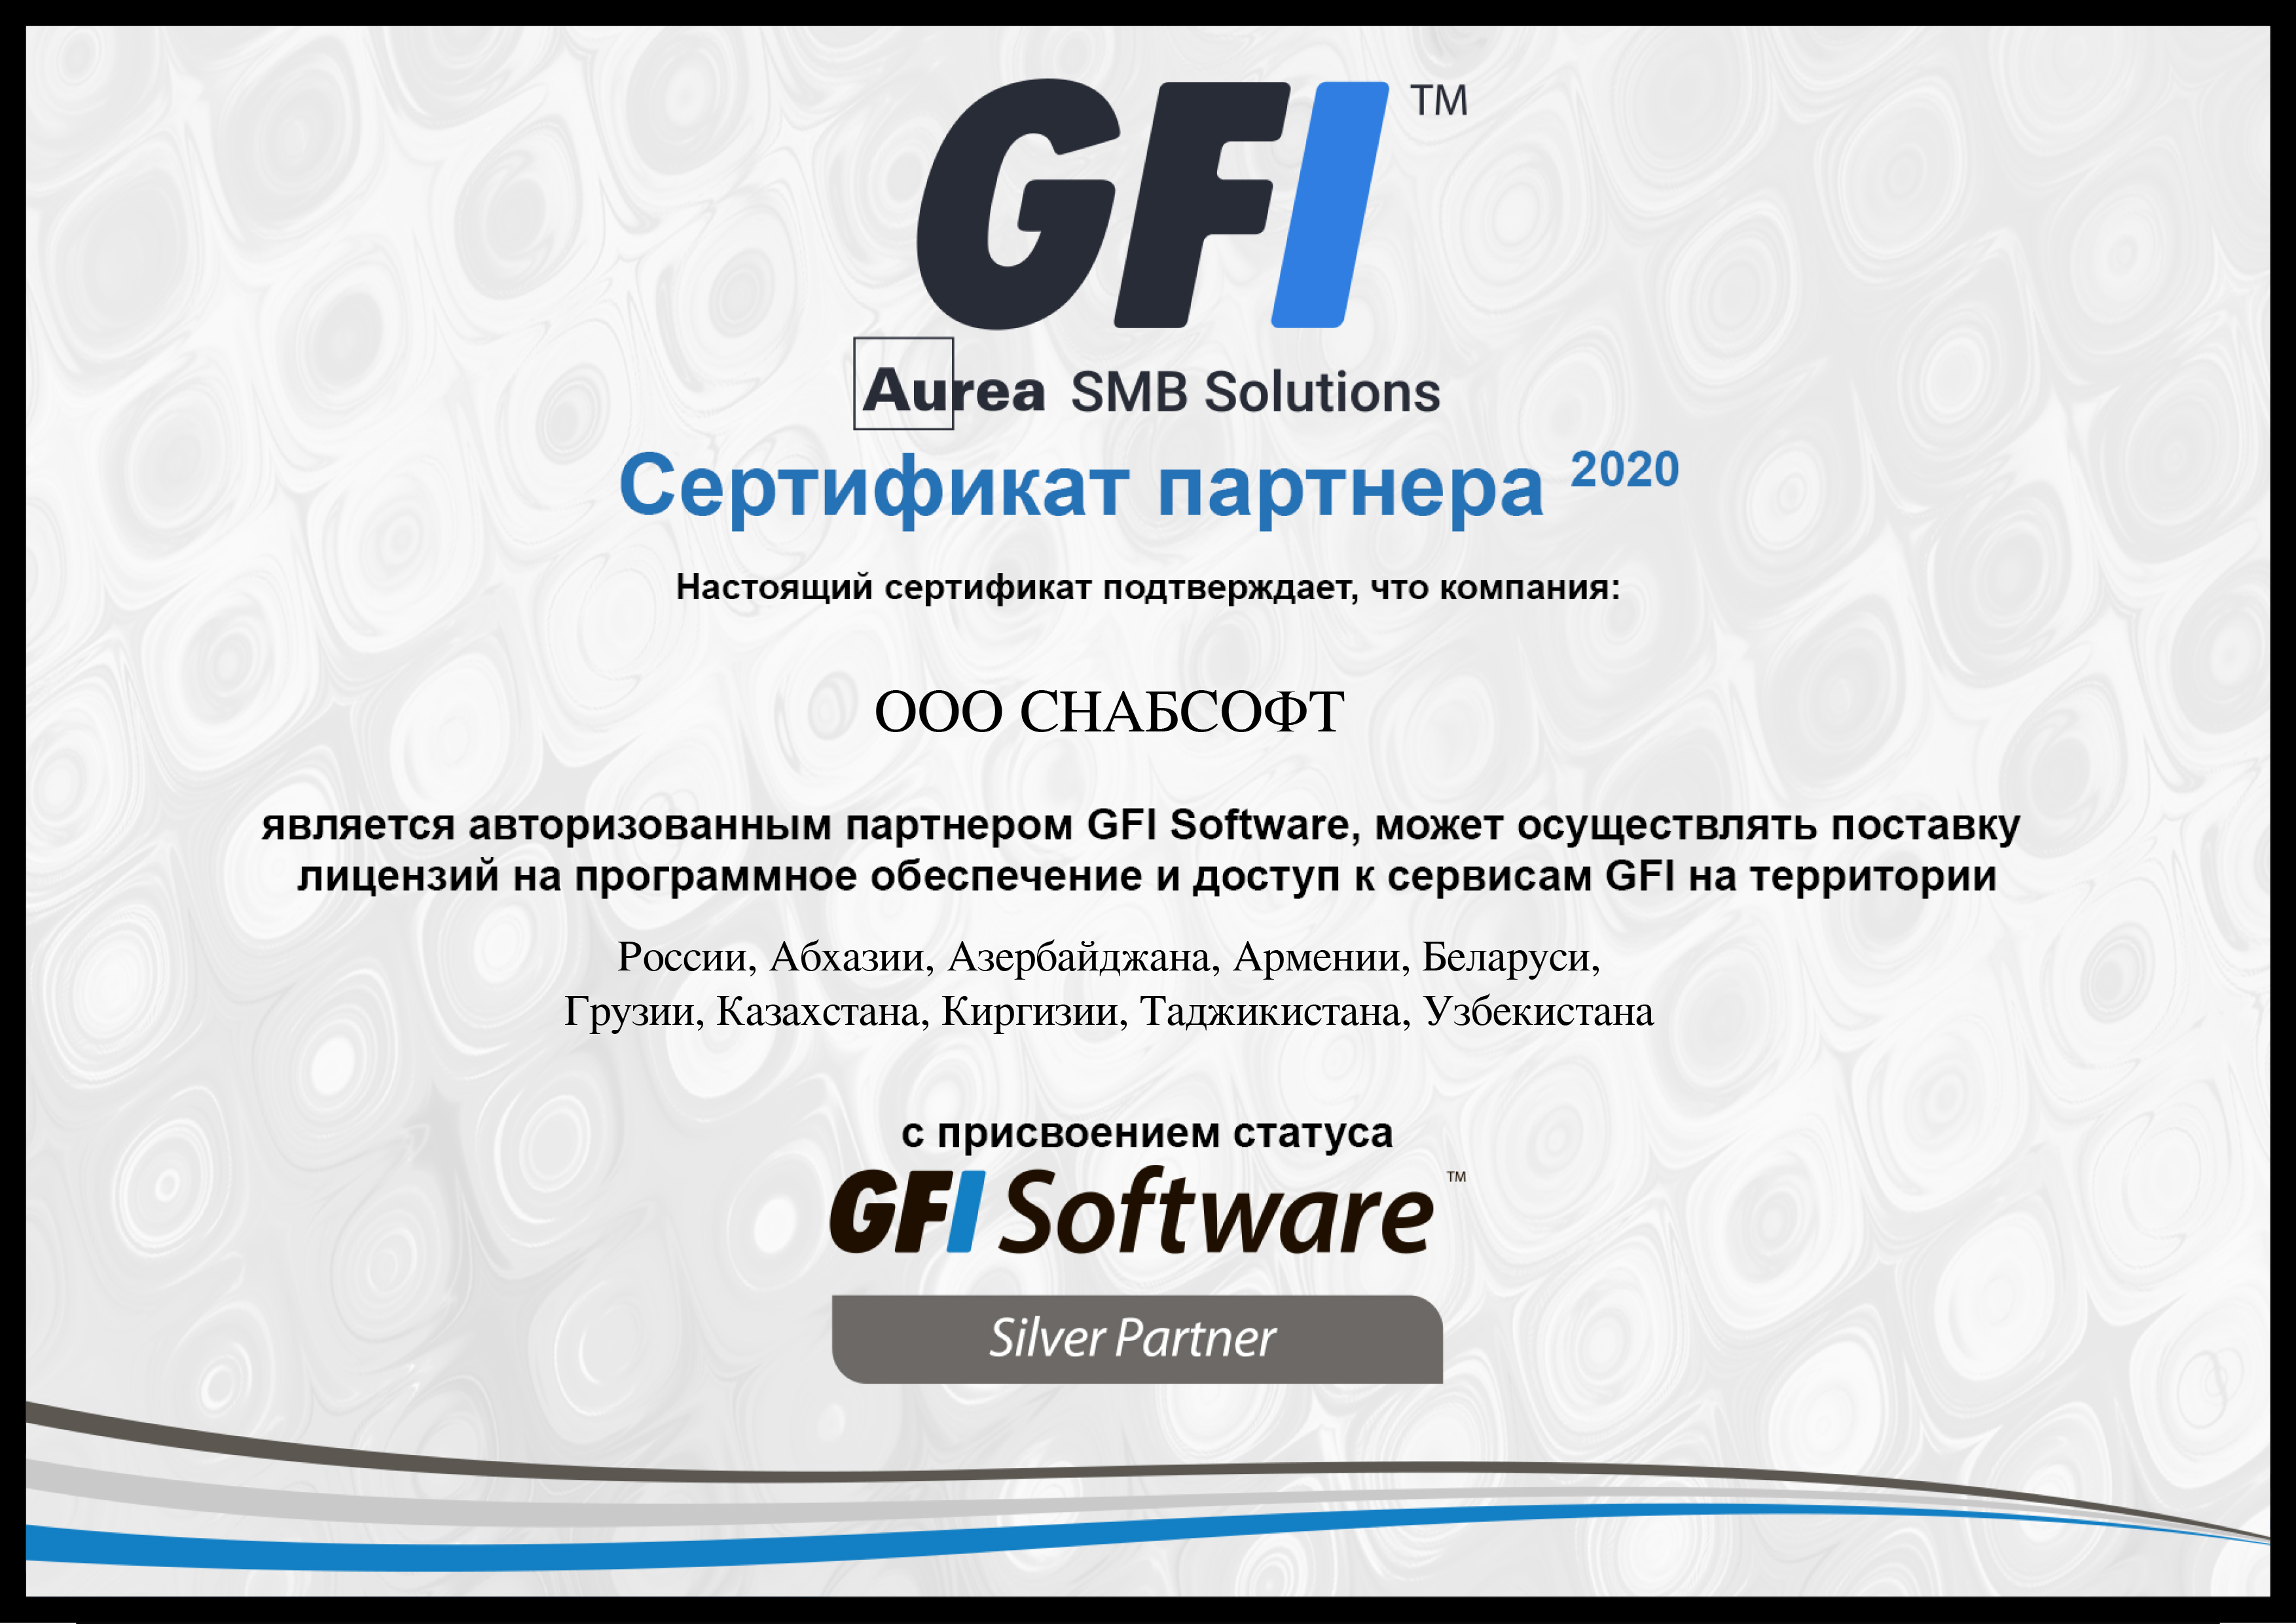 Купить антивирус GFI у официального партнера GFI Software